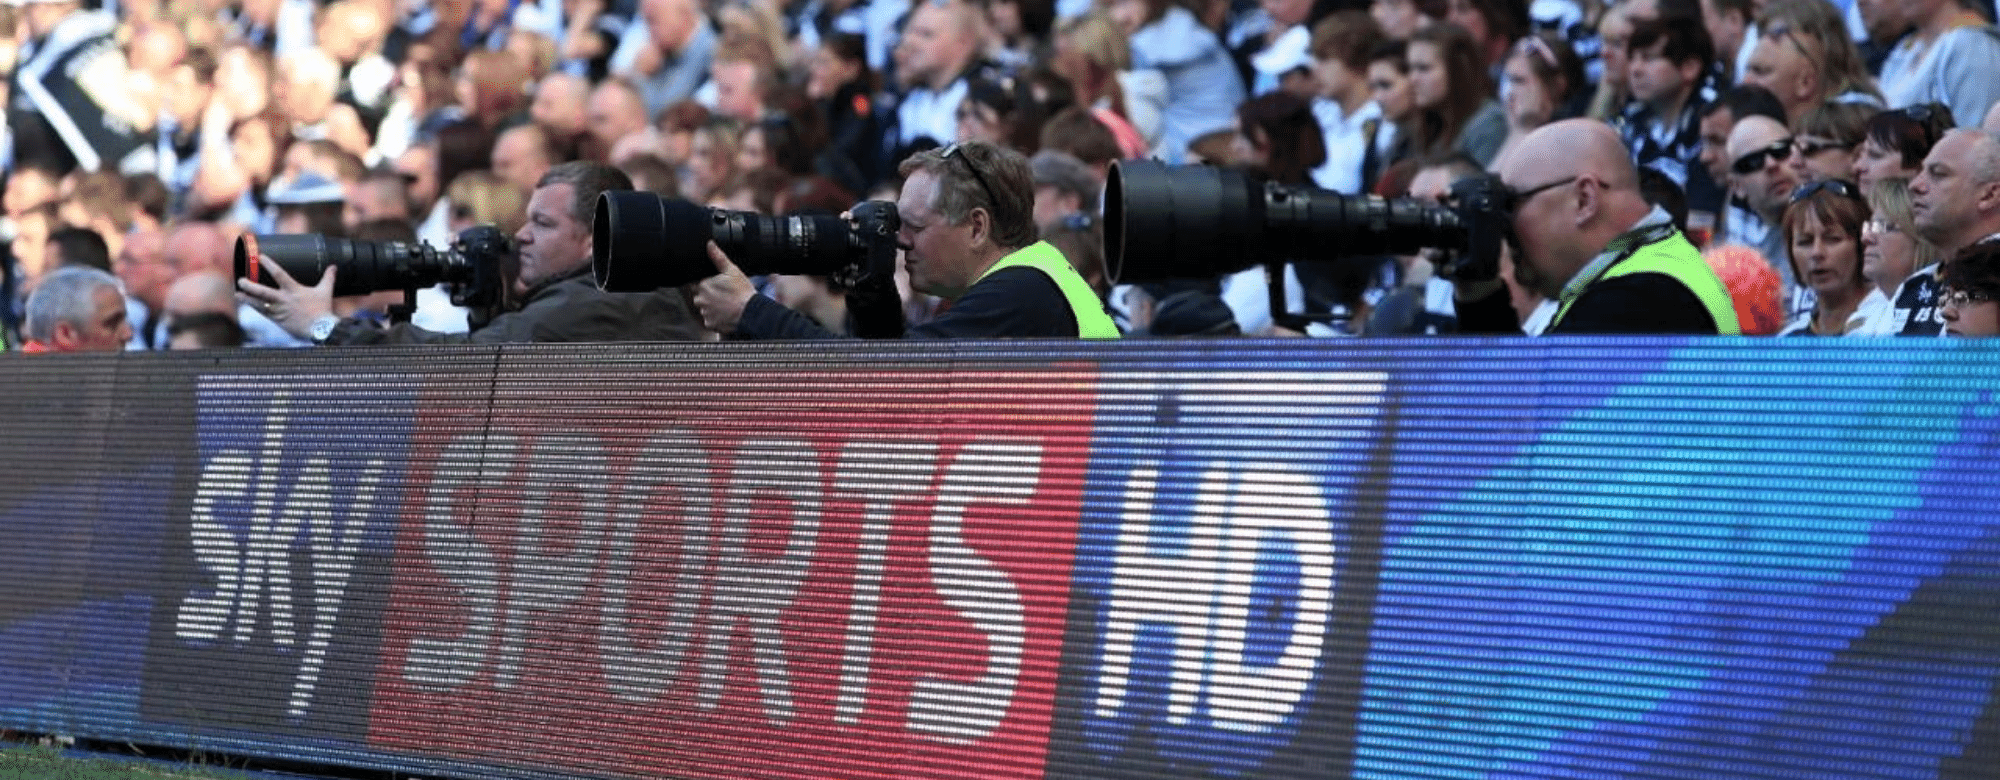 Atropa Super Fan: Apply For Sky Sports’ Fan Reactions